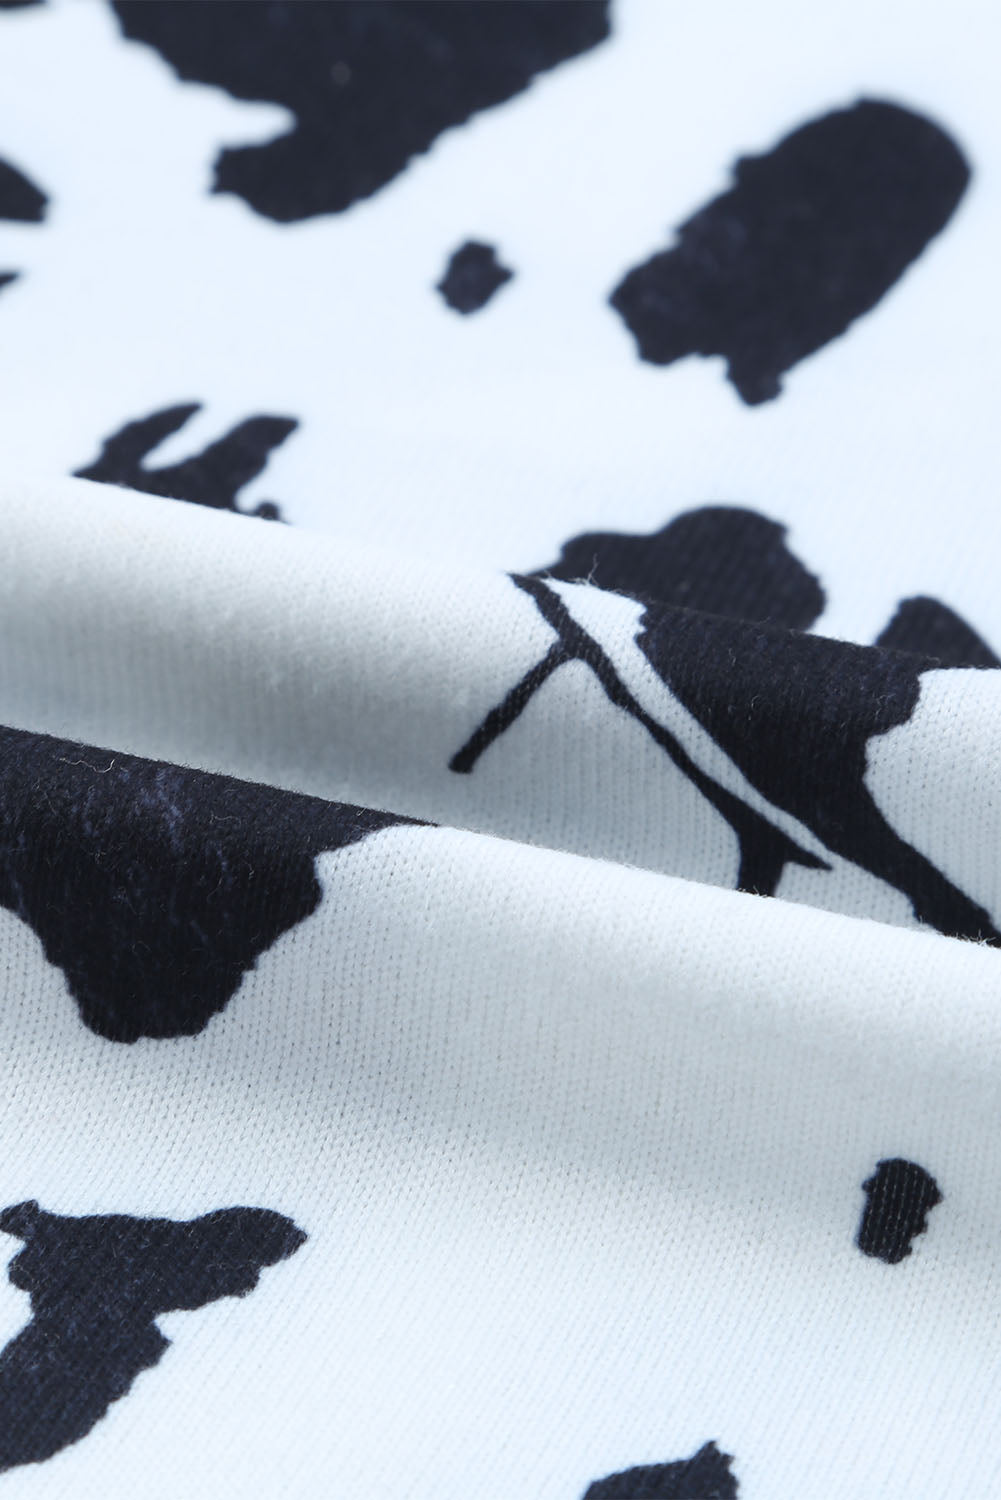 Smeđa majica kratkih rukava s kravljim printom na jedno rame